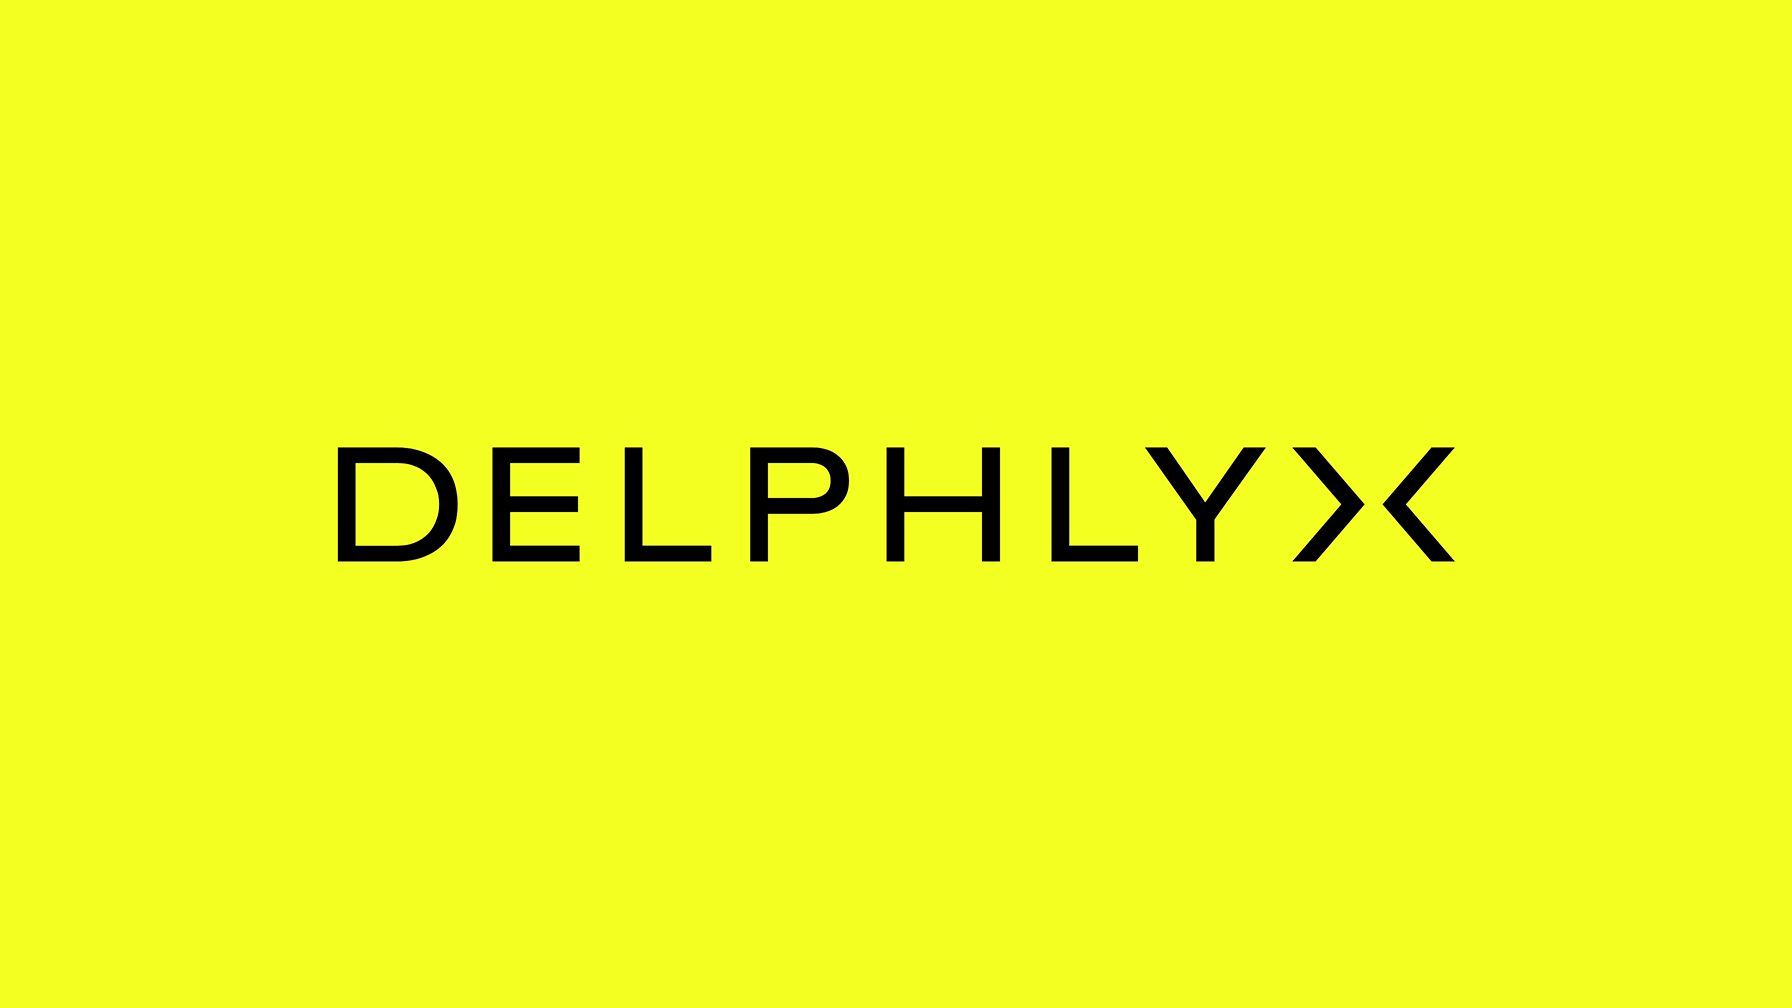 Delphlyx identity design logo showcase